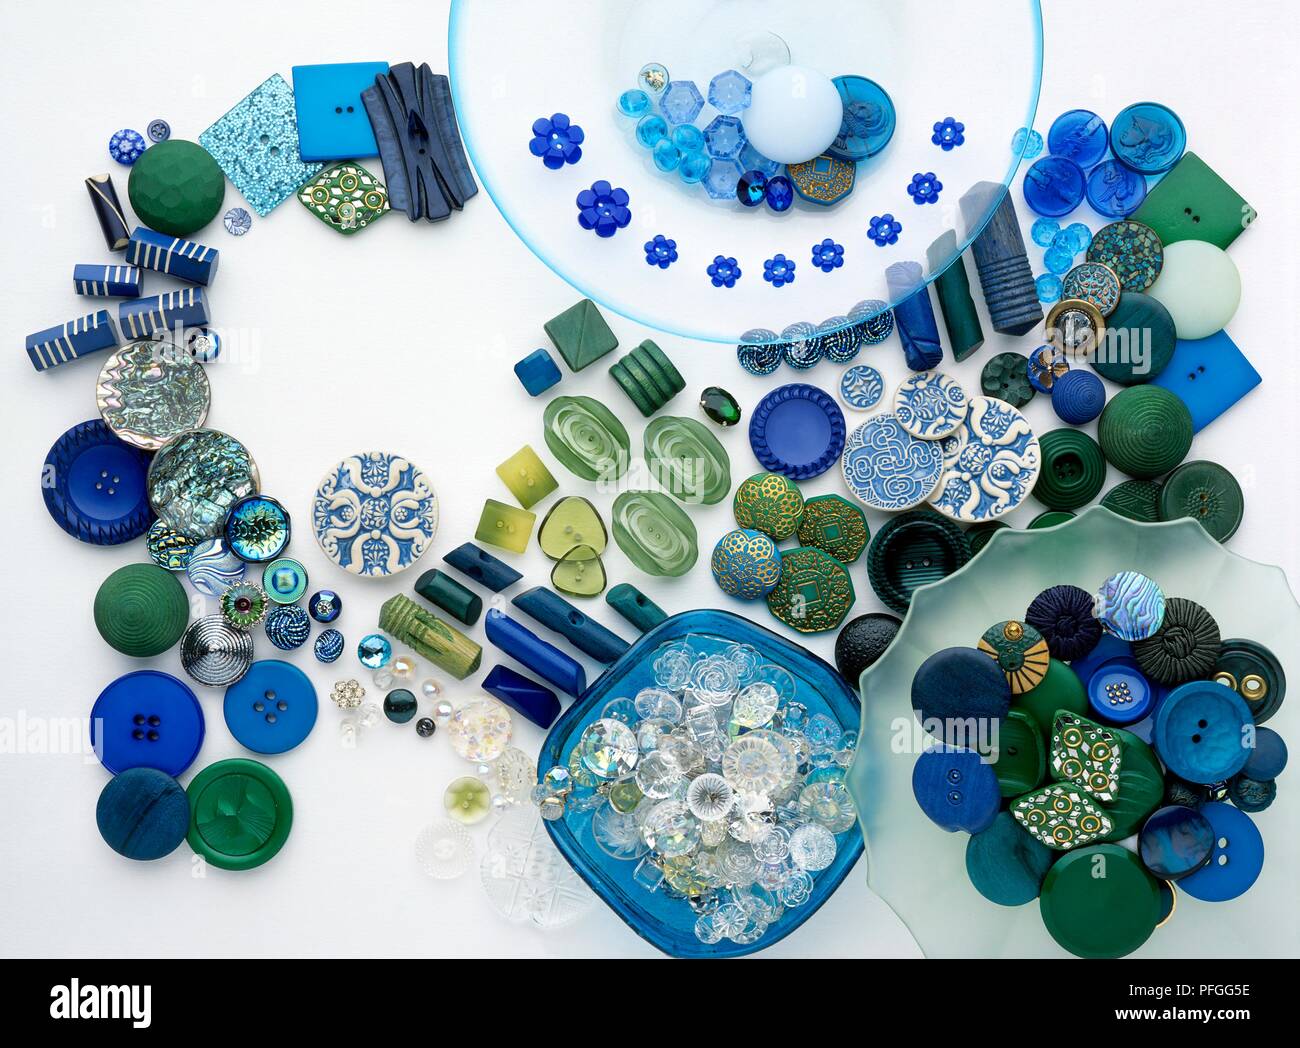 Boutons bleu et vert de diverses formes et tailles Banque D'Images